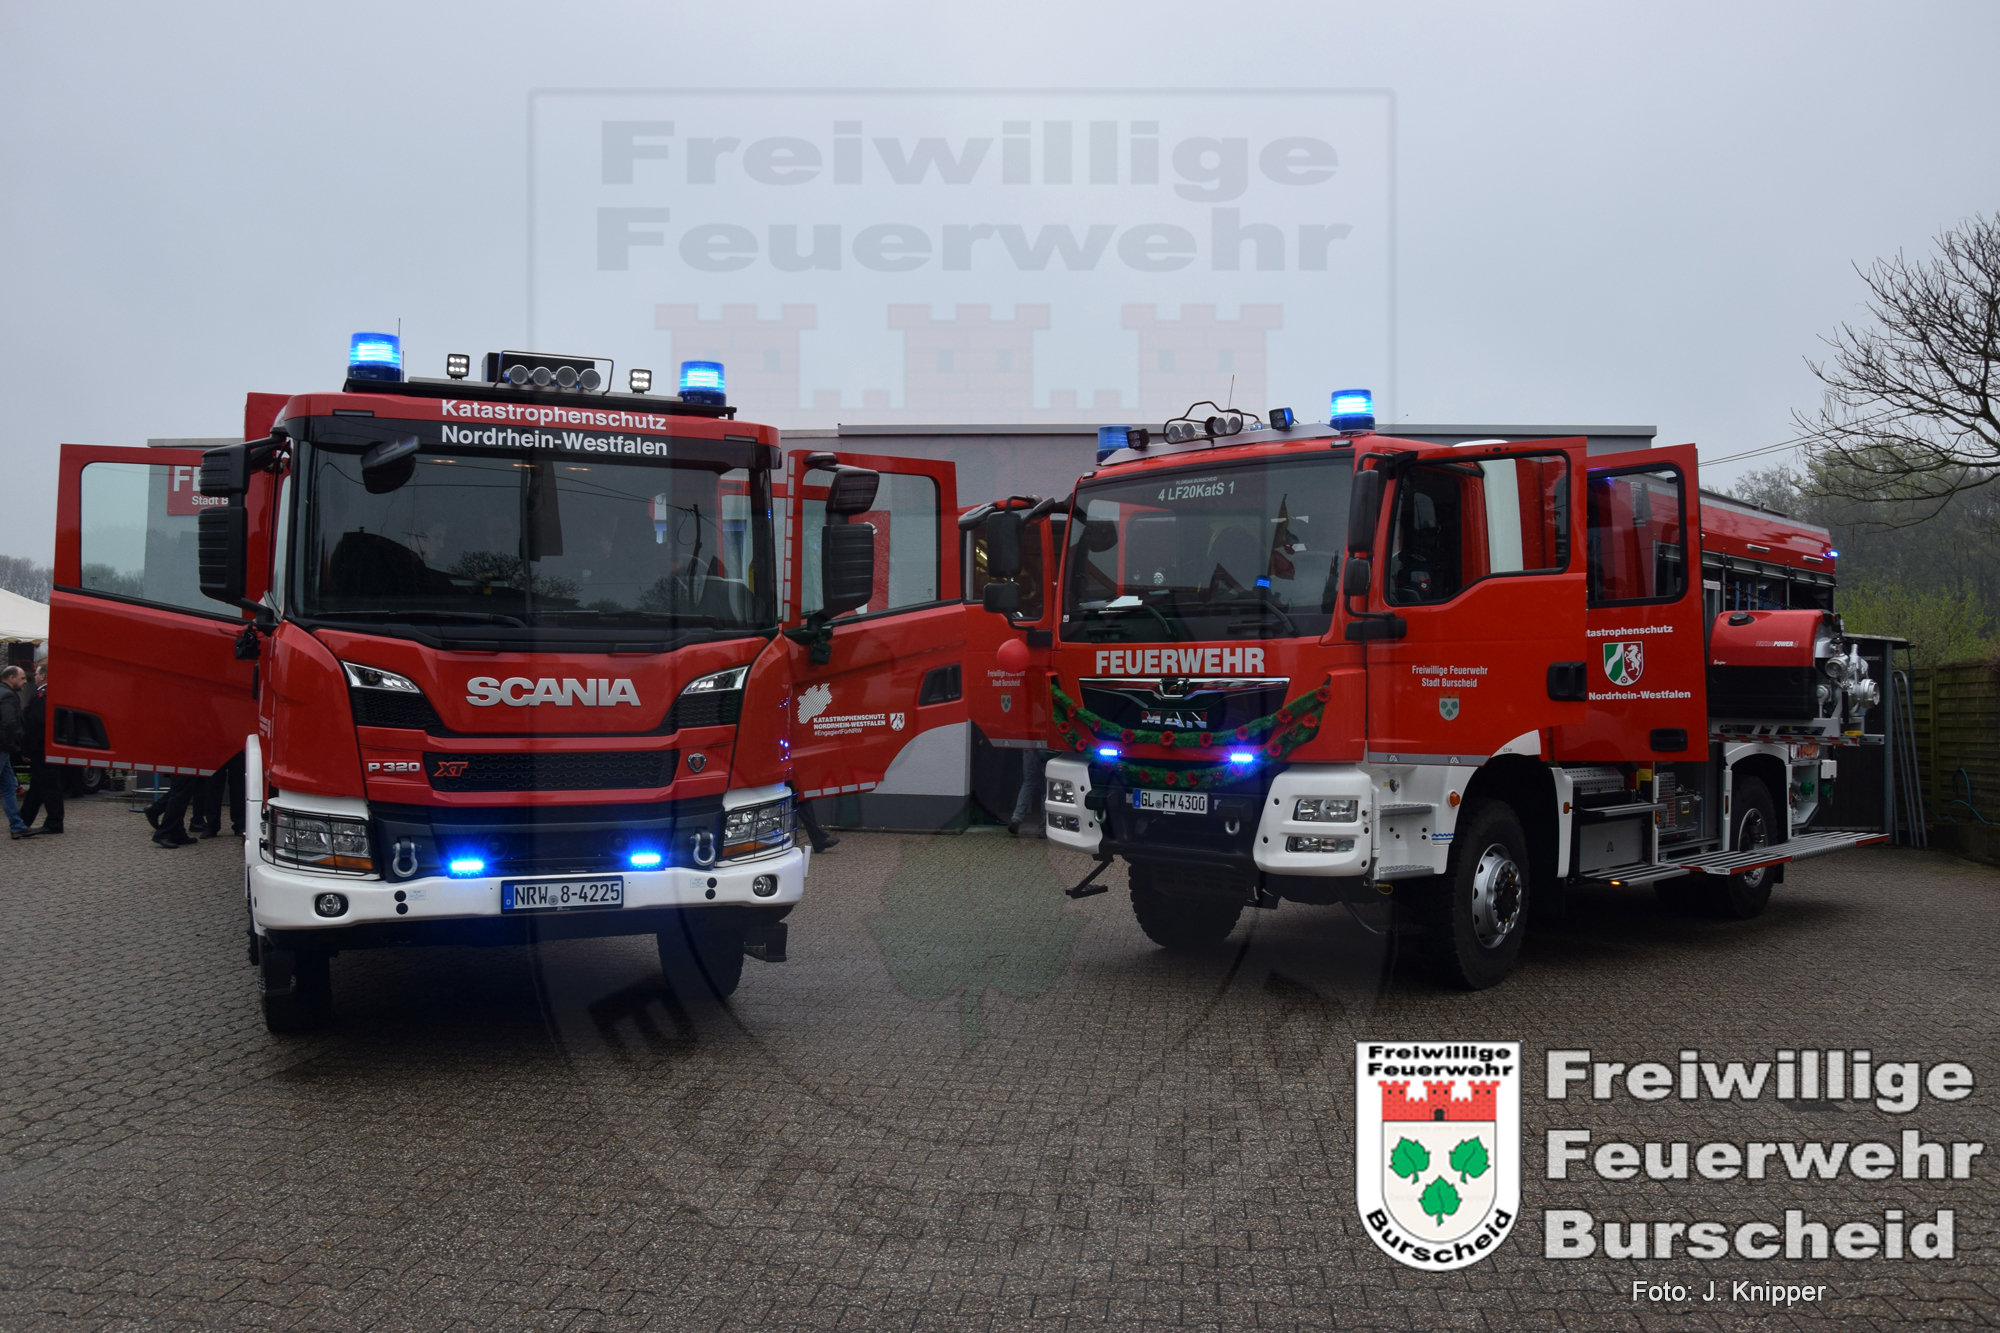 Zwei neue Fahrzeuge für Burscheider Feuerwehr